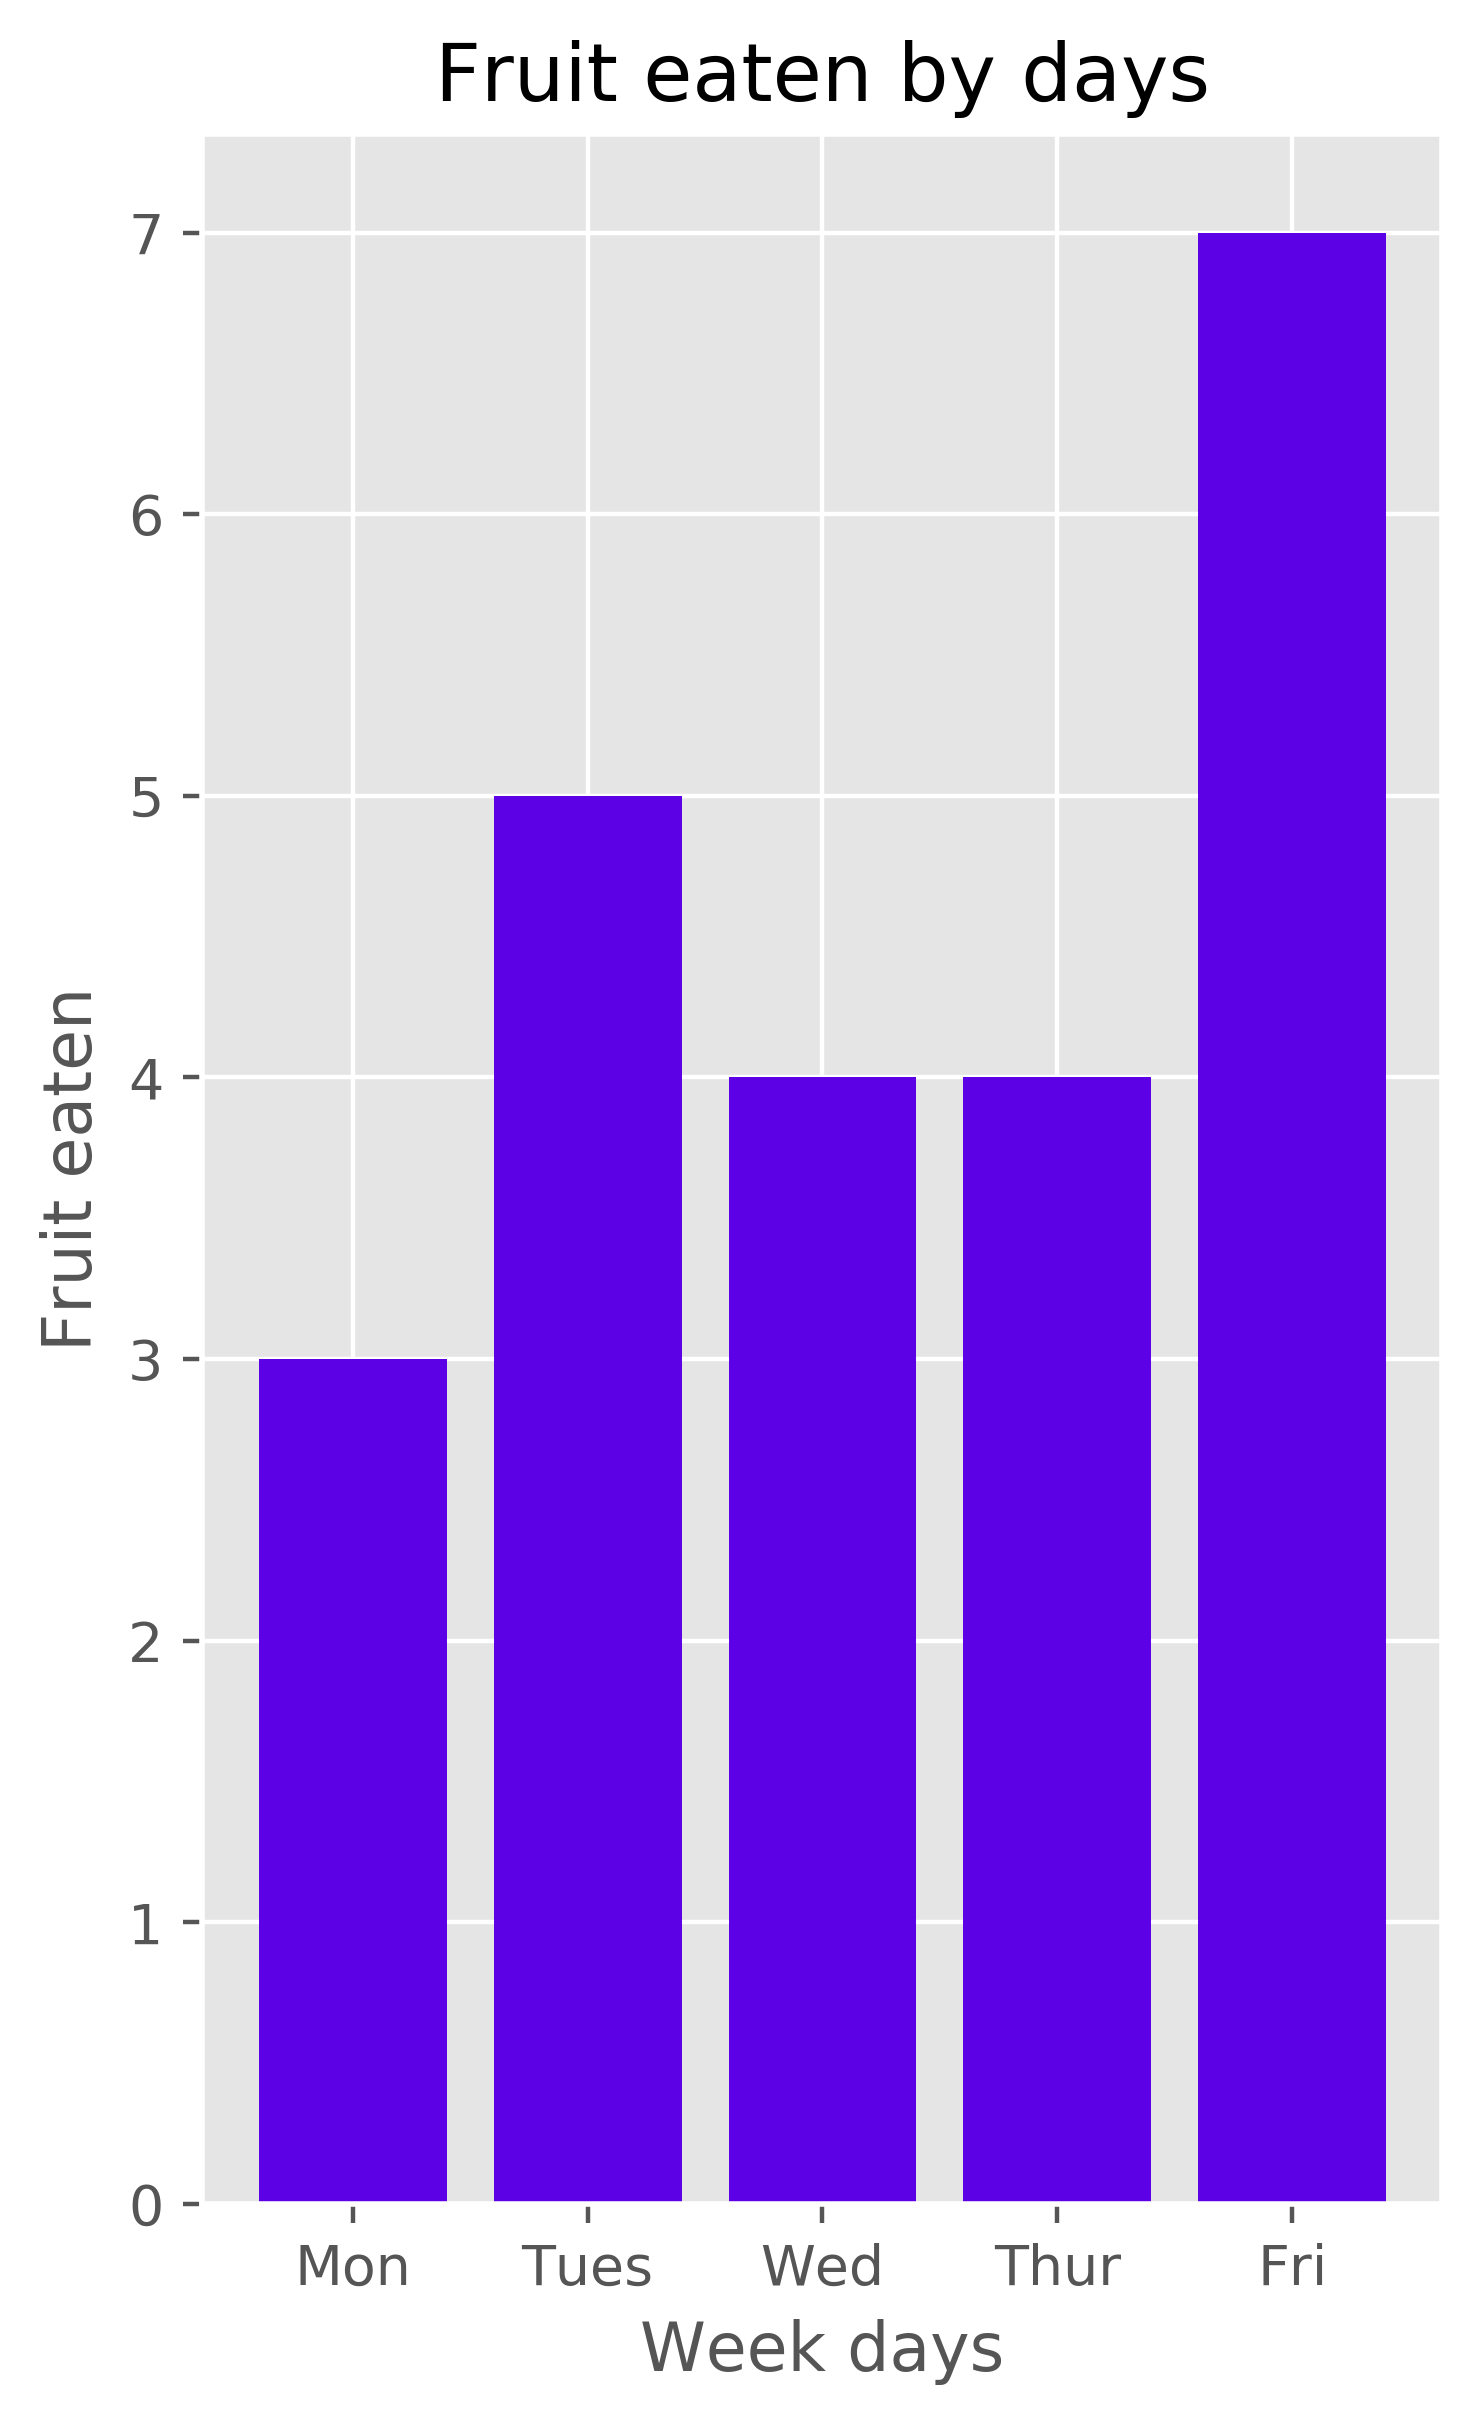 Pyplot bar chart created in Python